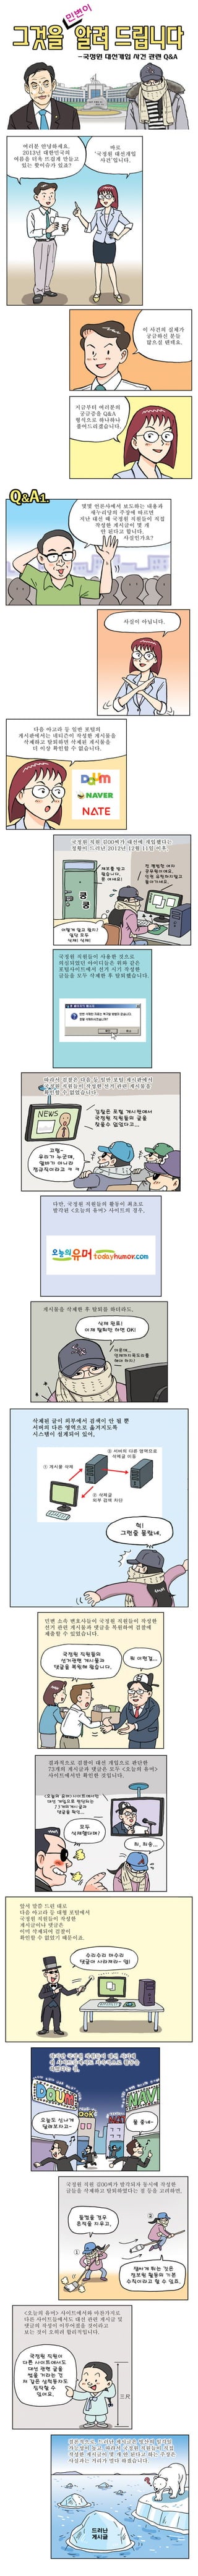 만화로 보는 국정원Q&a_1